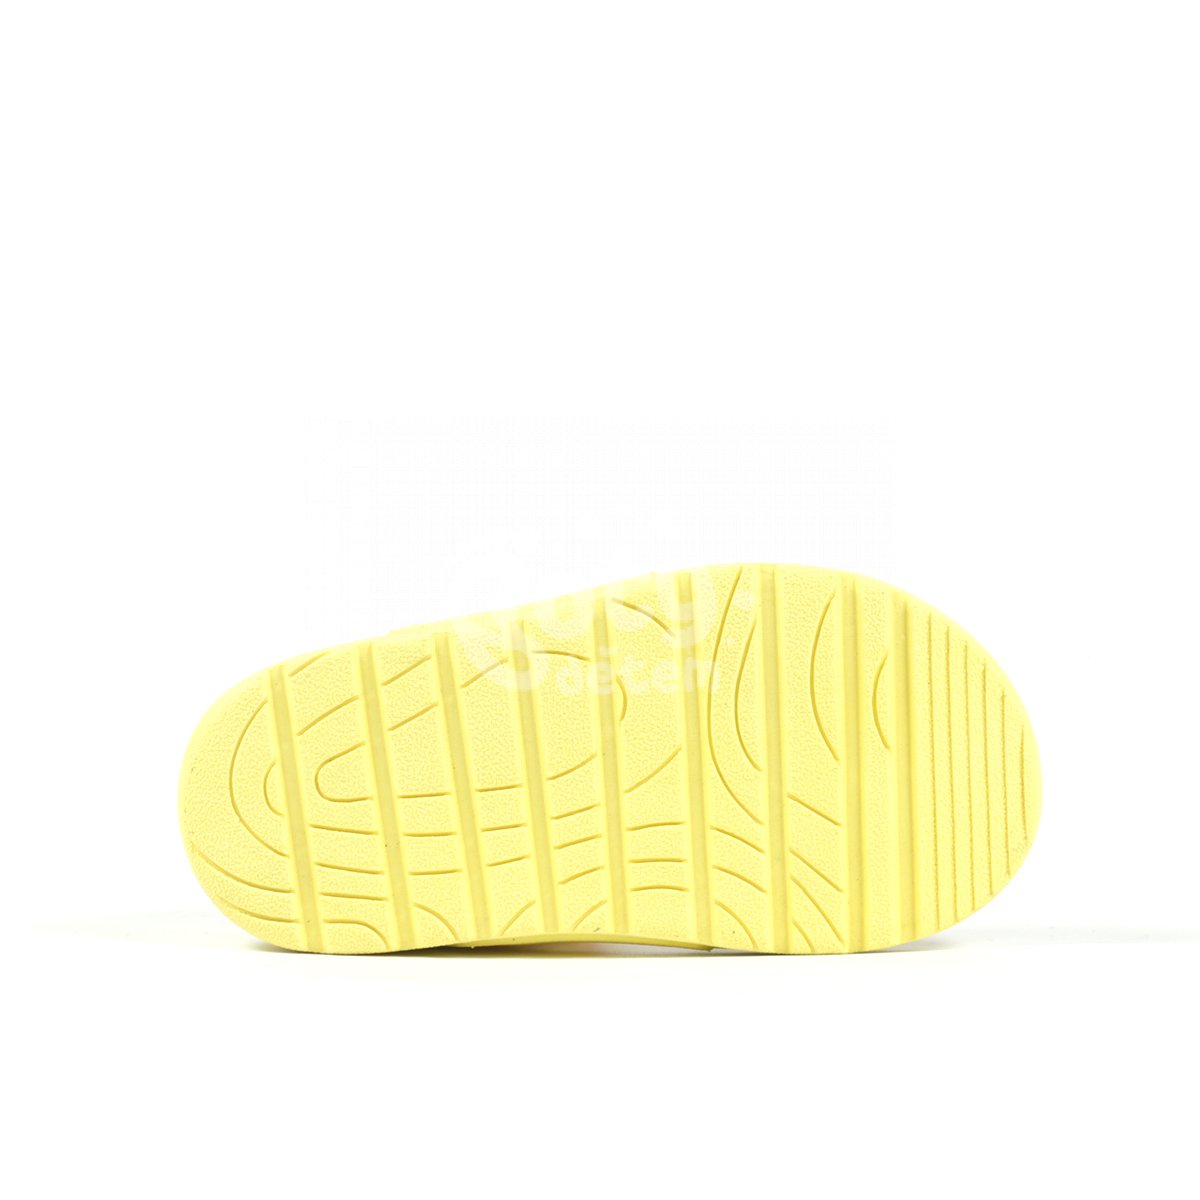 Sandálky Hemma Richter 5350-5192-4811 žlutá